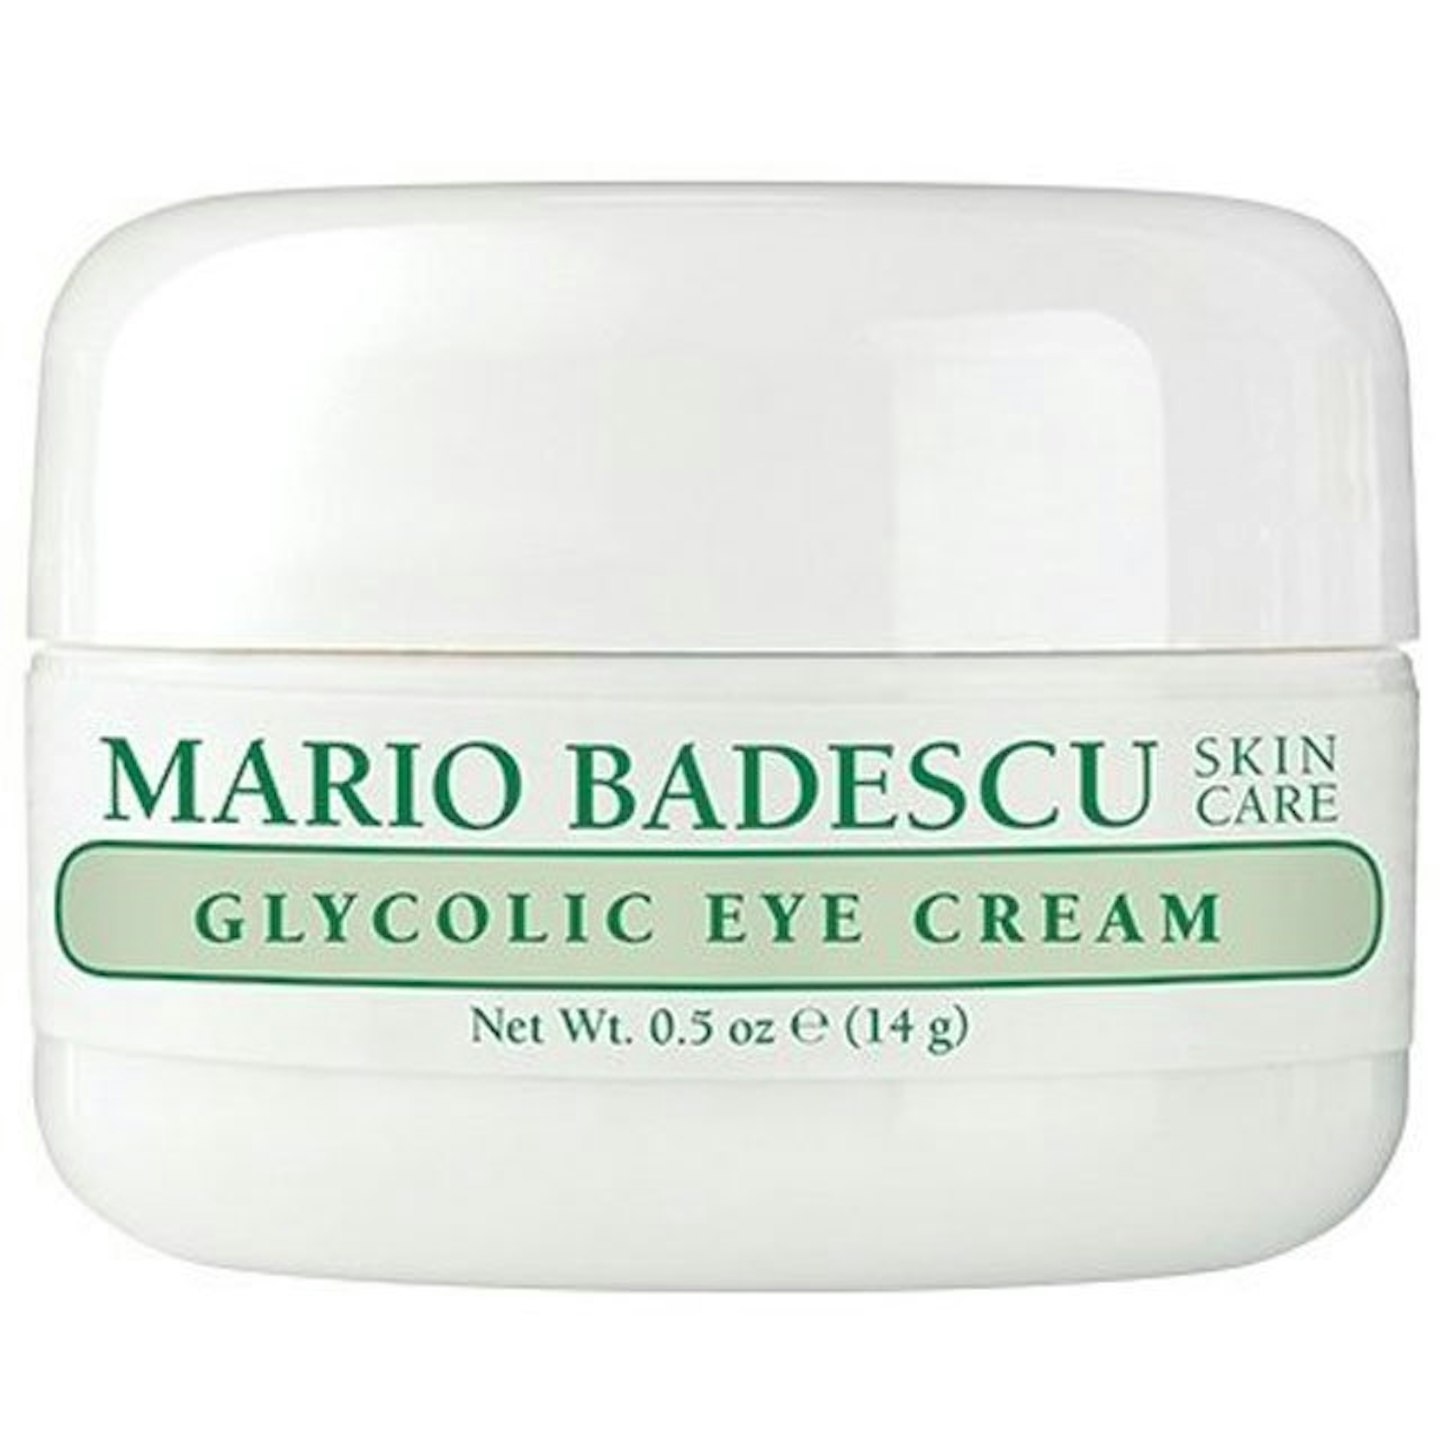 mario-badescu_glycolic-eye-cream